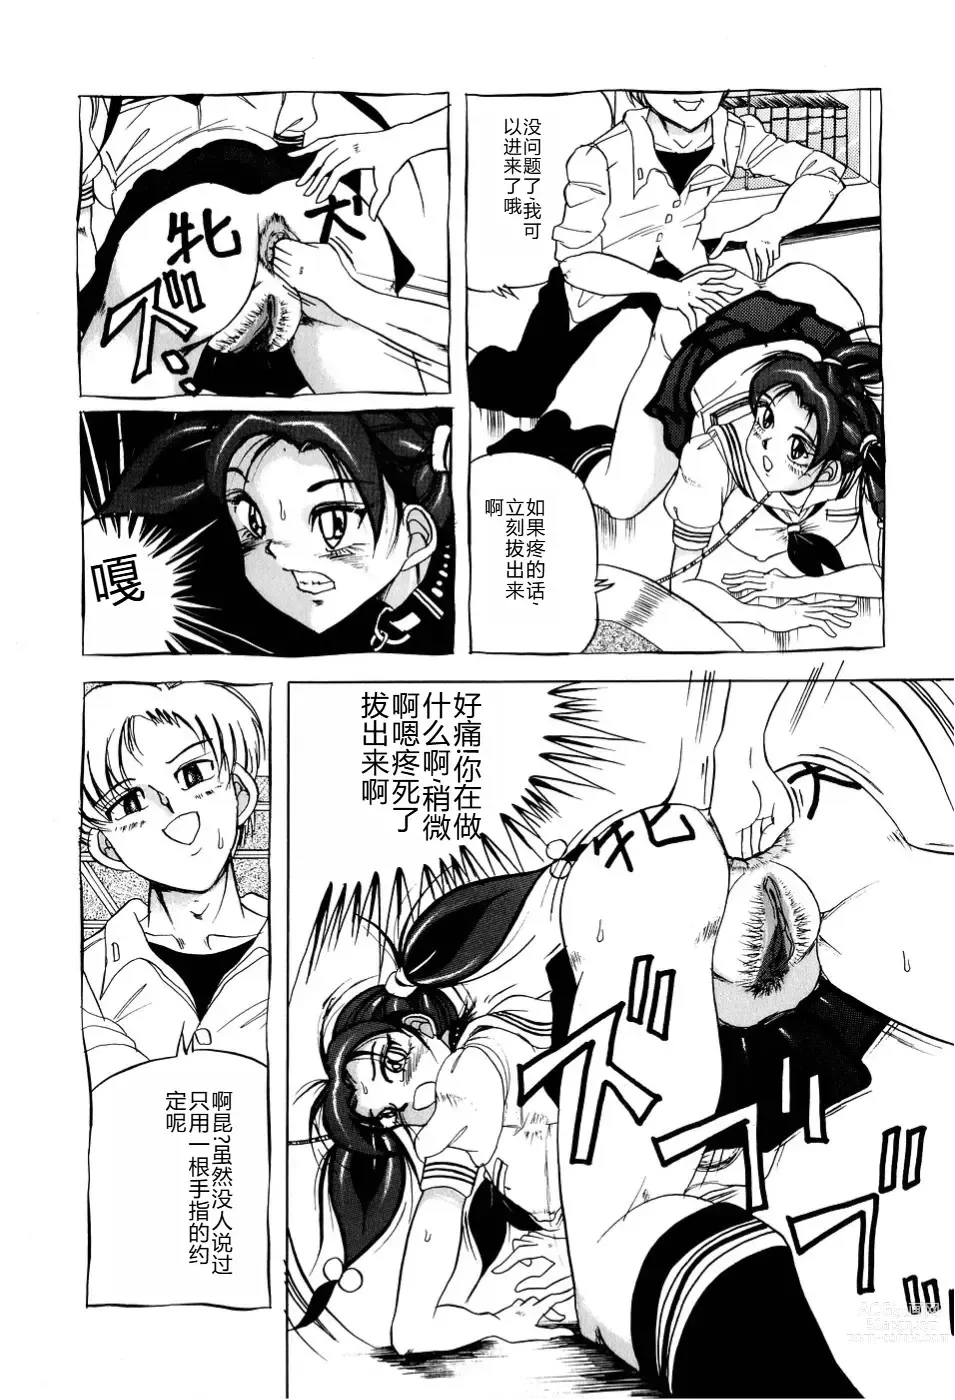 Page 161 of manga Kusozume Benkihime